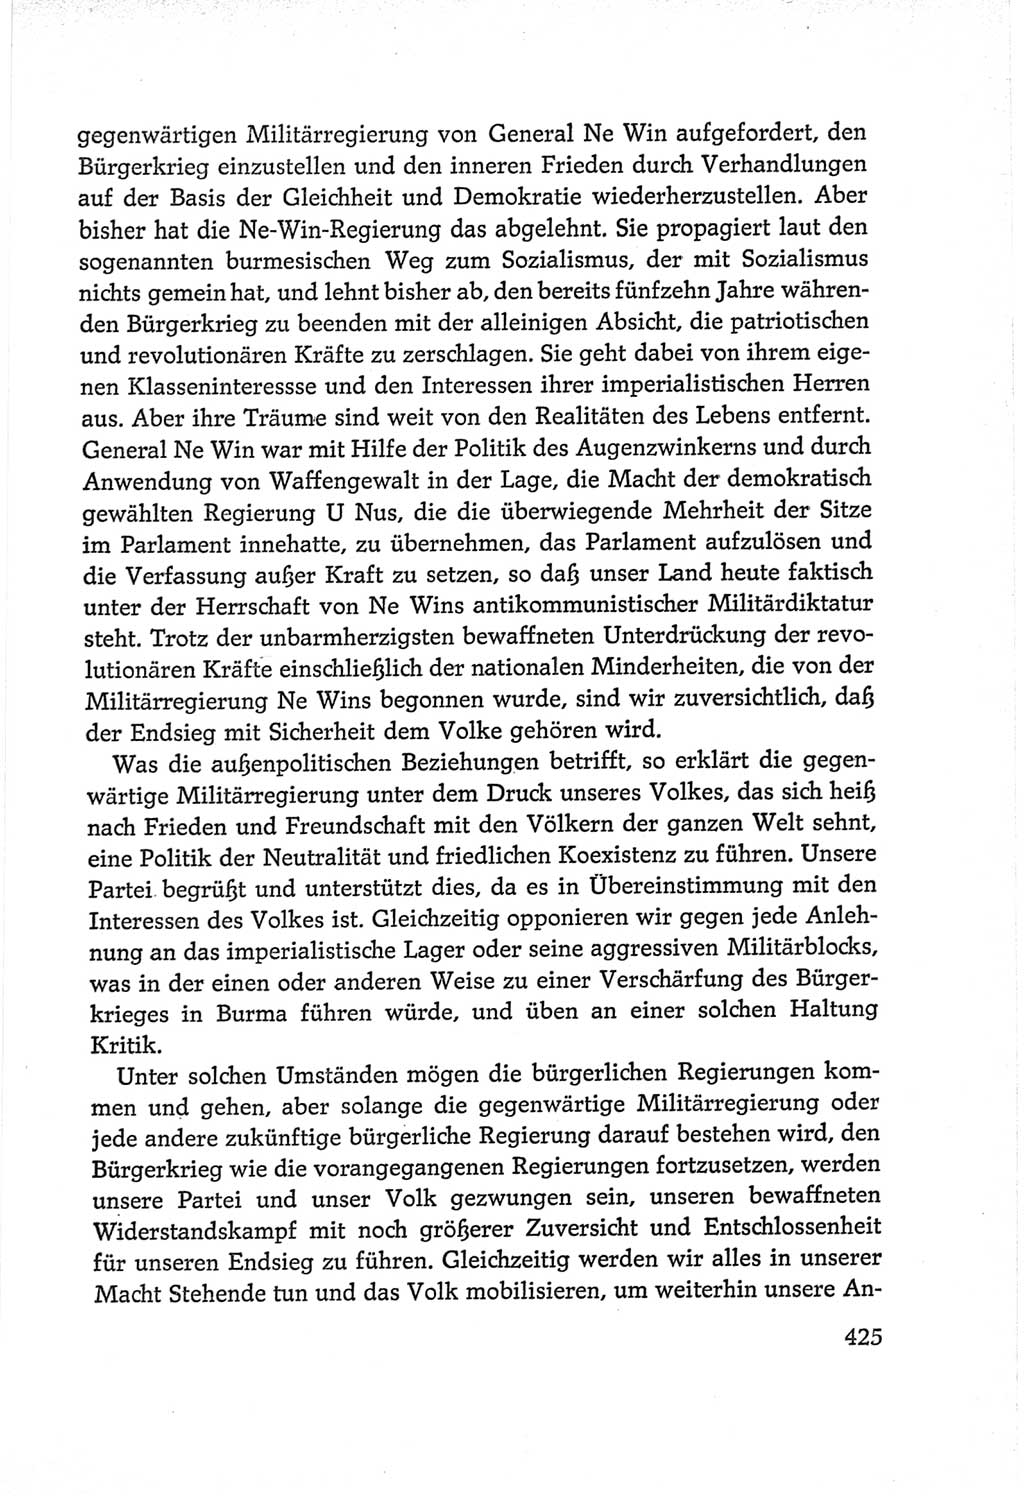 Protokoll der Verhandlungen des Ⅵ. Parteitages der Sozialistischen Einheitspartei Deutschlands (SED) [Deutsche Demokratische Republik (DDR)] 1963, Band Ⅱ, Seite 425 (Prot. Verh. Ⅵ. PT SED DDR 1963, Bd. Ⅱ, S. 425)